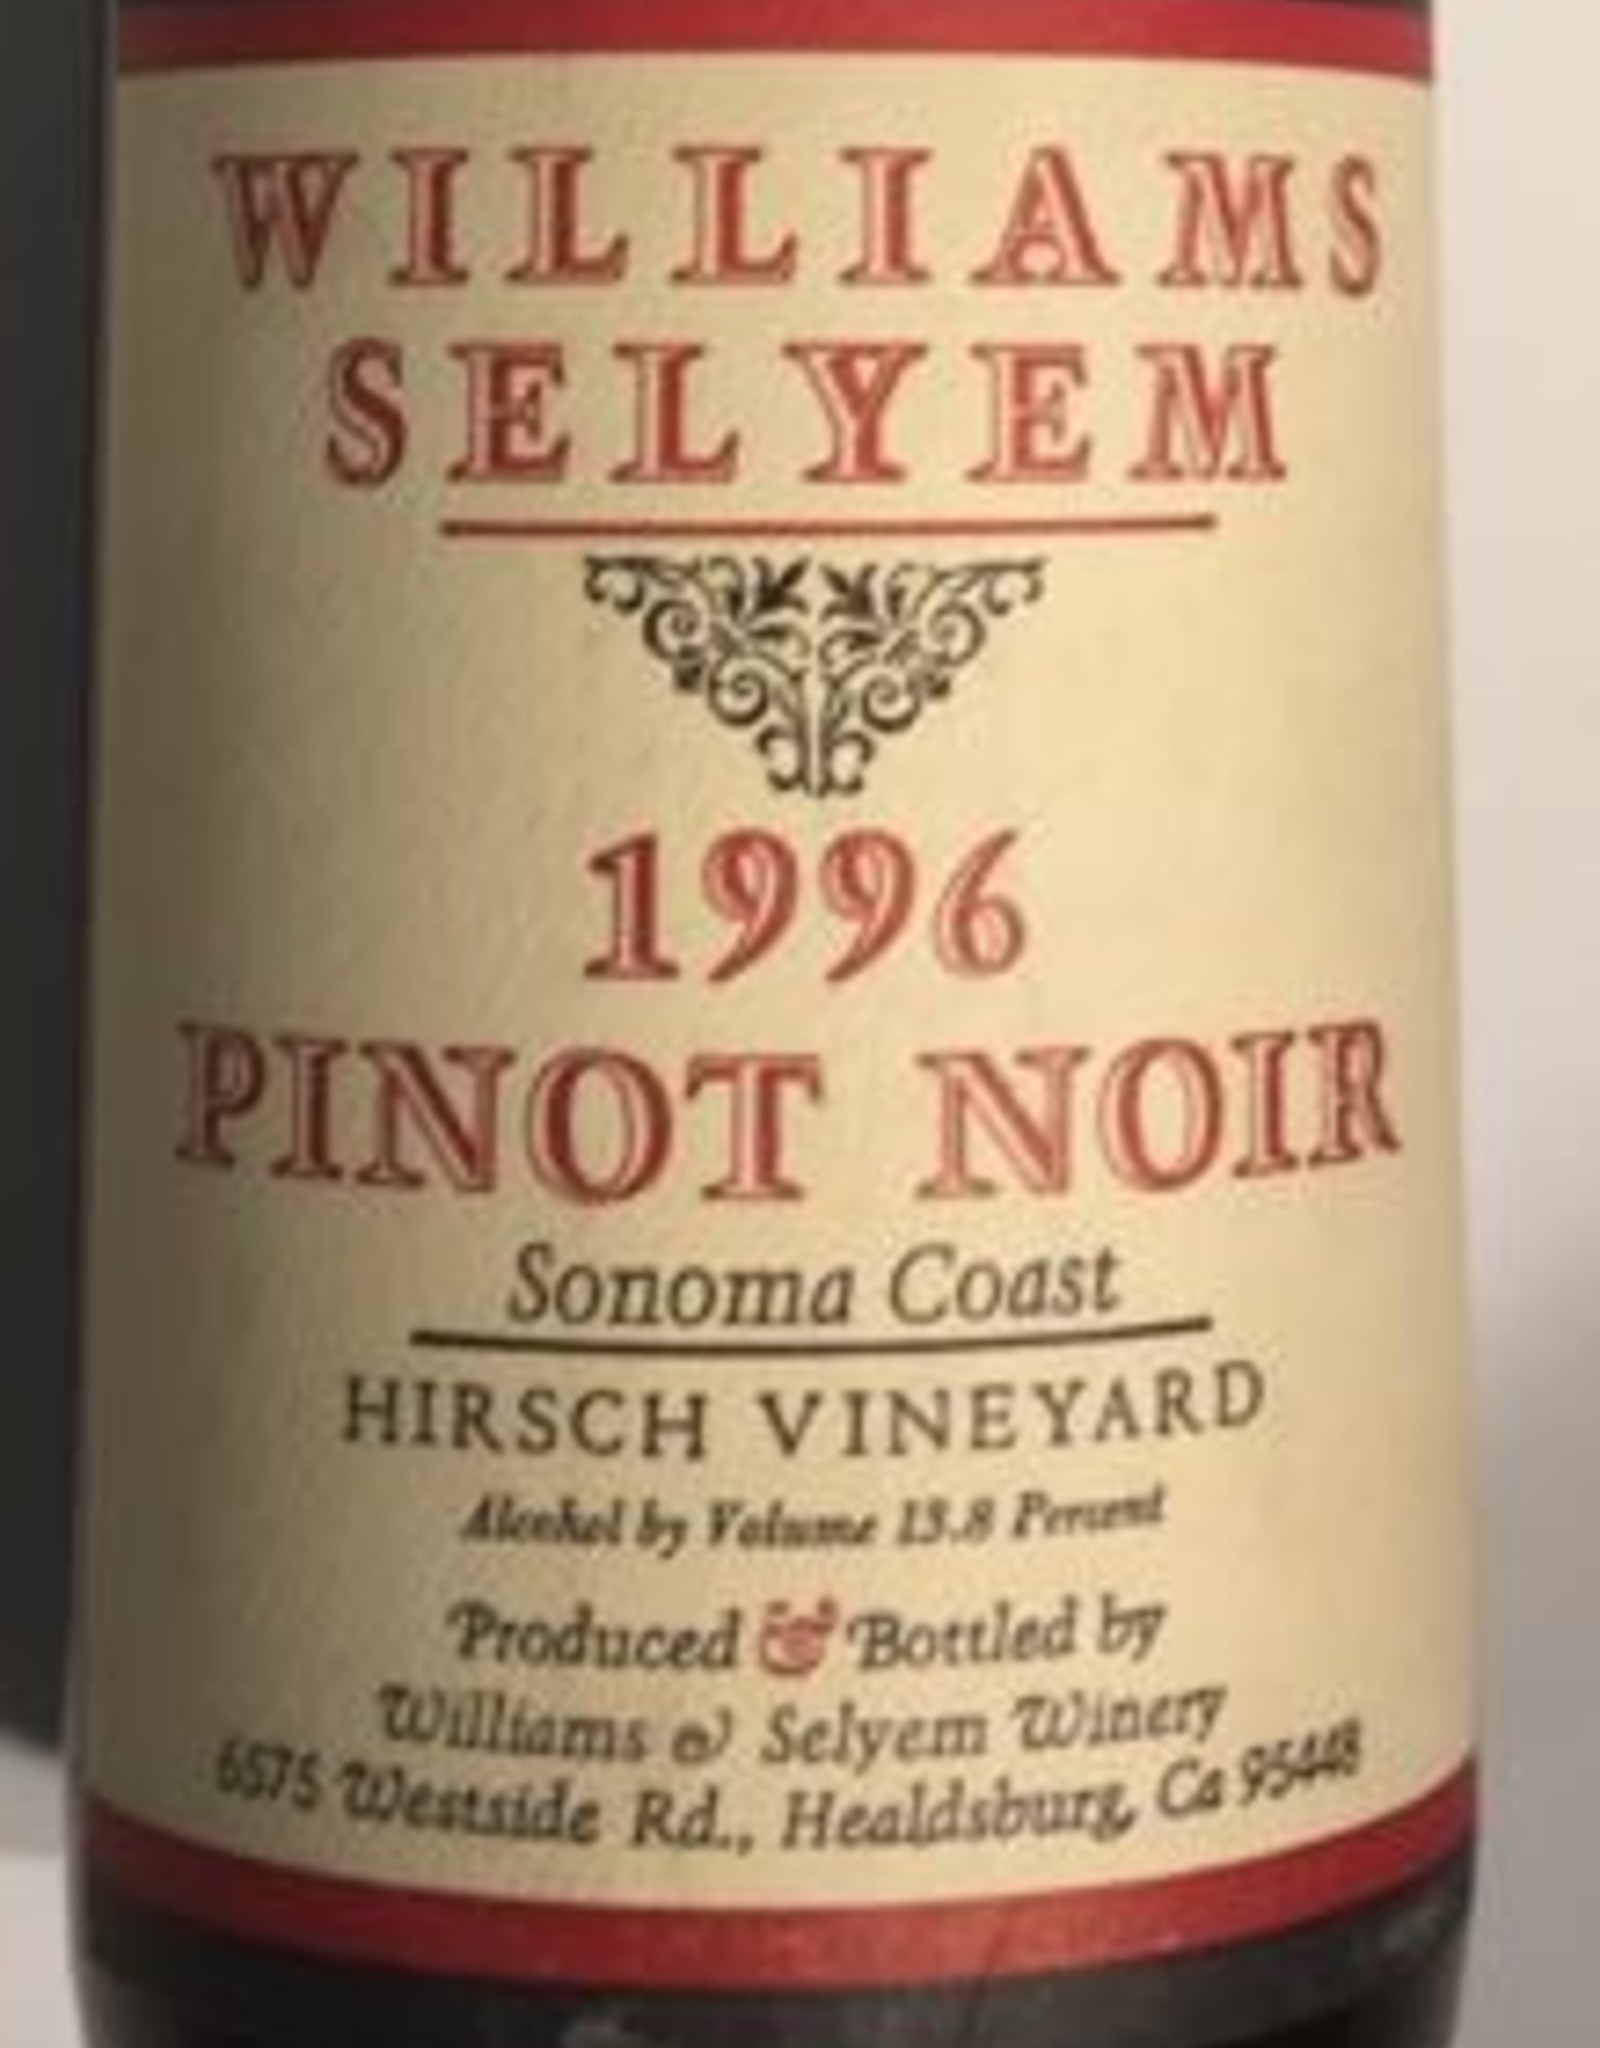 Williams Selyem Pinot Noir 1996 Hirsch